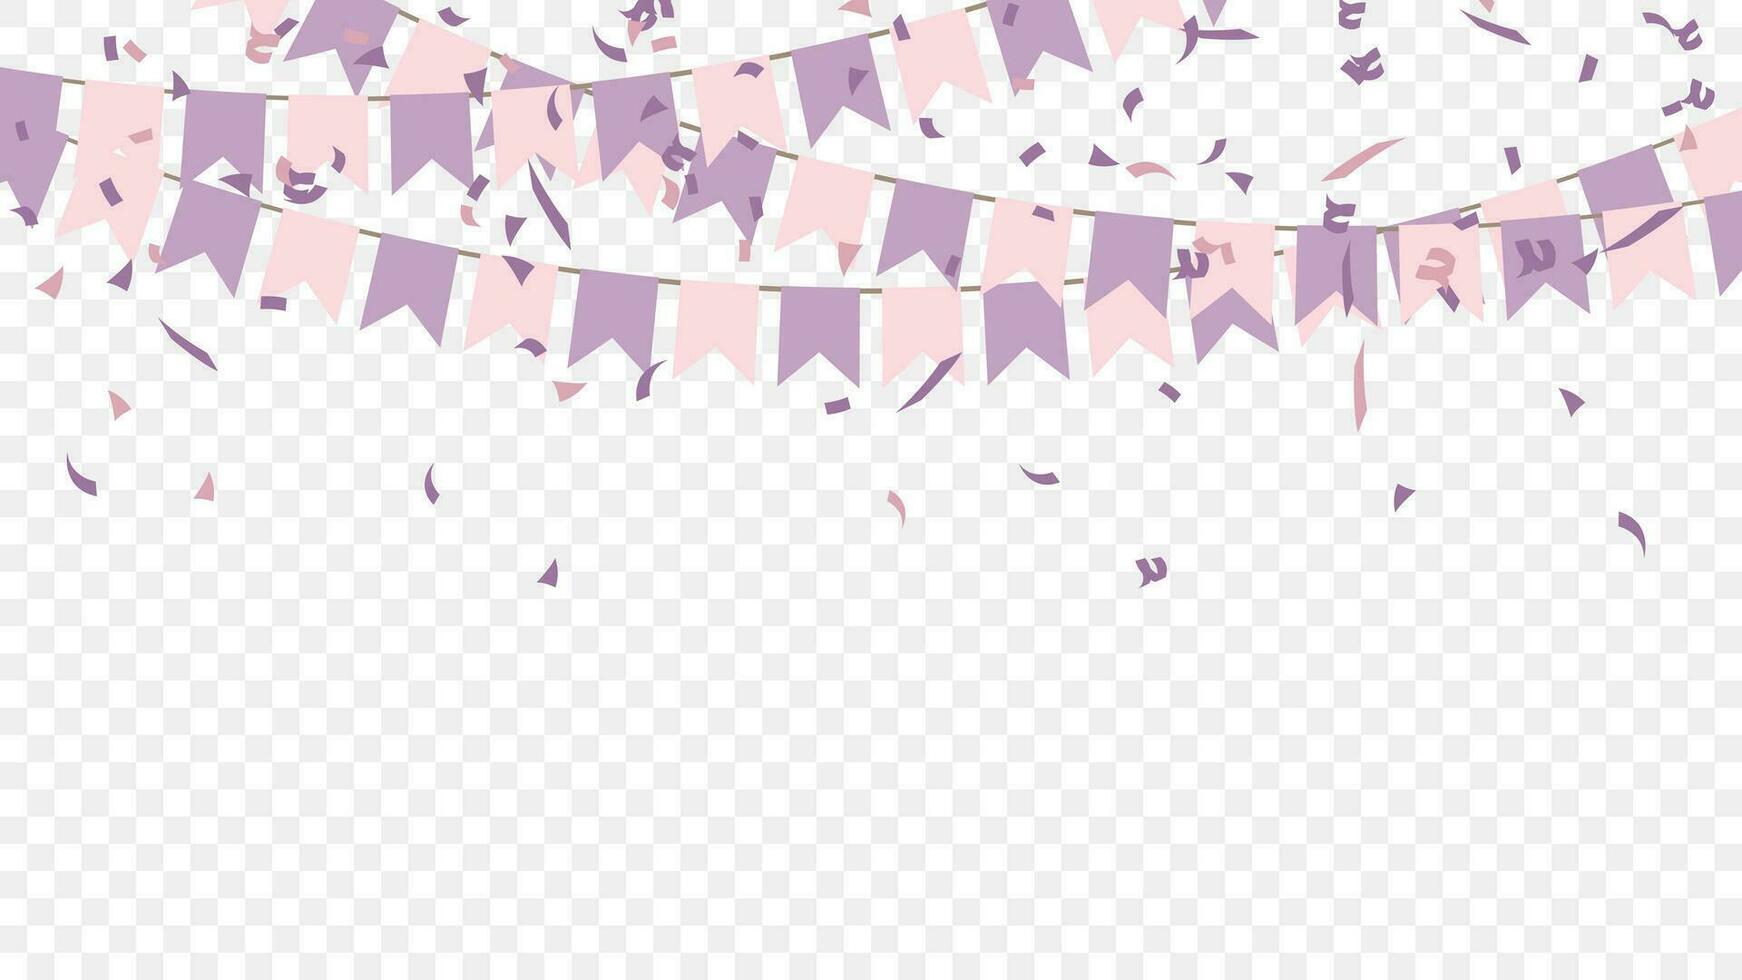 viola rosa festa bandiere con coriandoli cadente. celebrazione e compleanno. vettore illustrazione